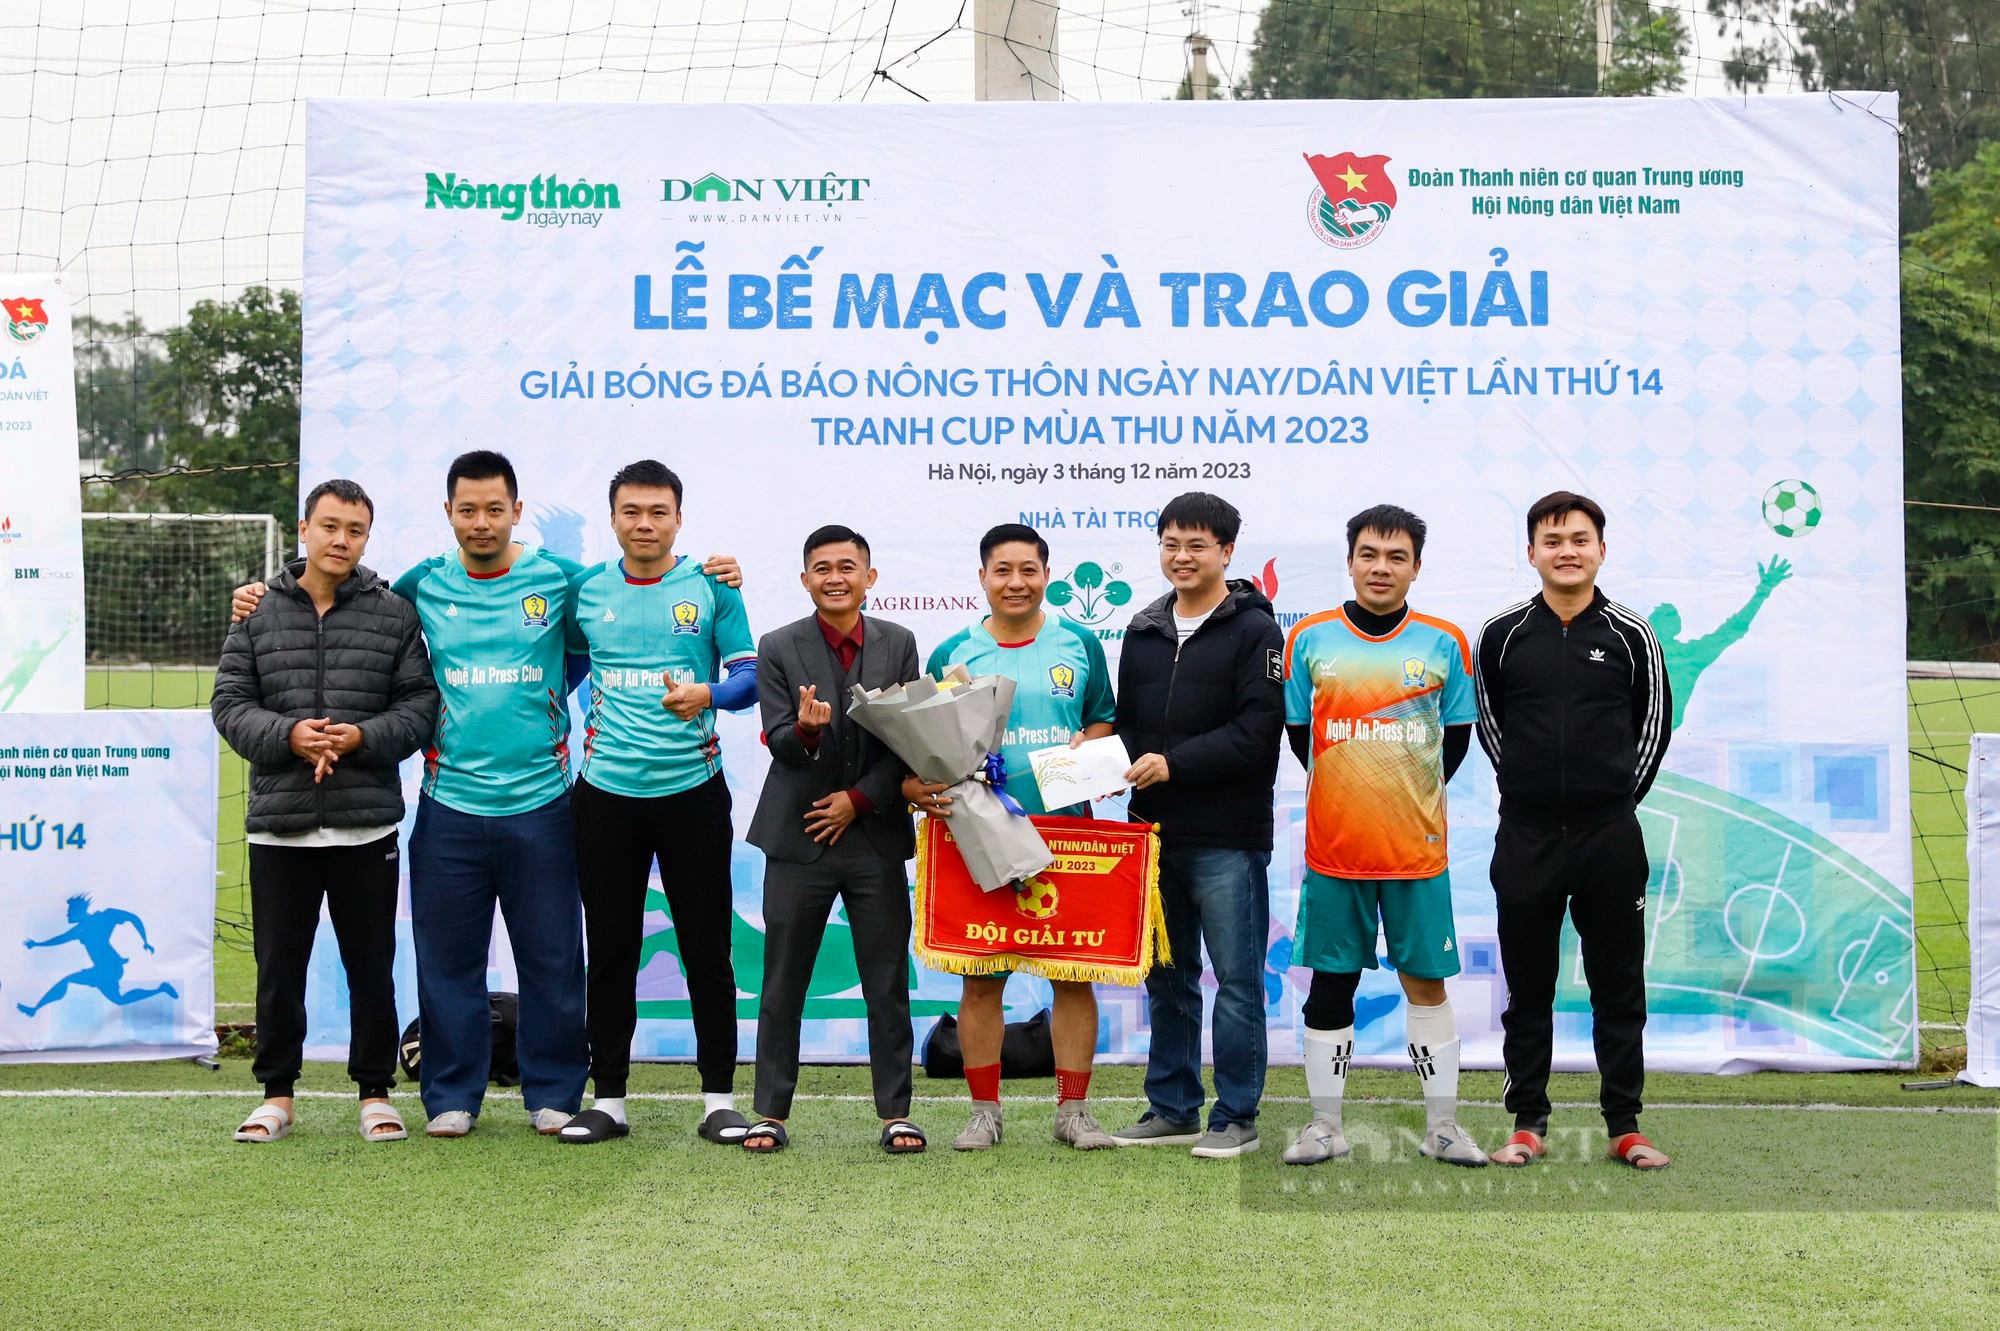 Hình ảnh Lễ bế mạc Giải bóng đá Báo Nông thôn Ngày nay/Dân Việt năm 2023 - Ảnh 9.